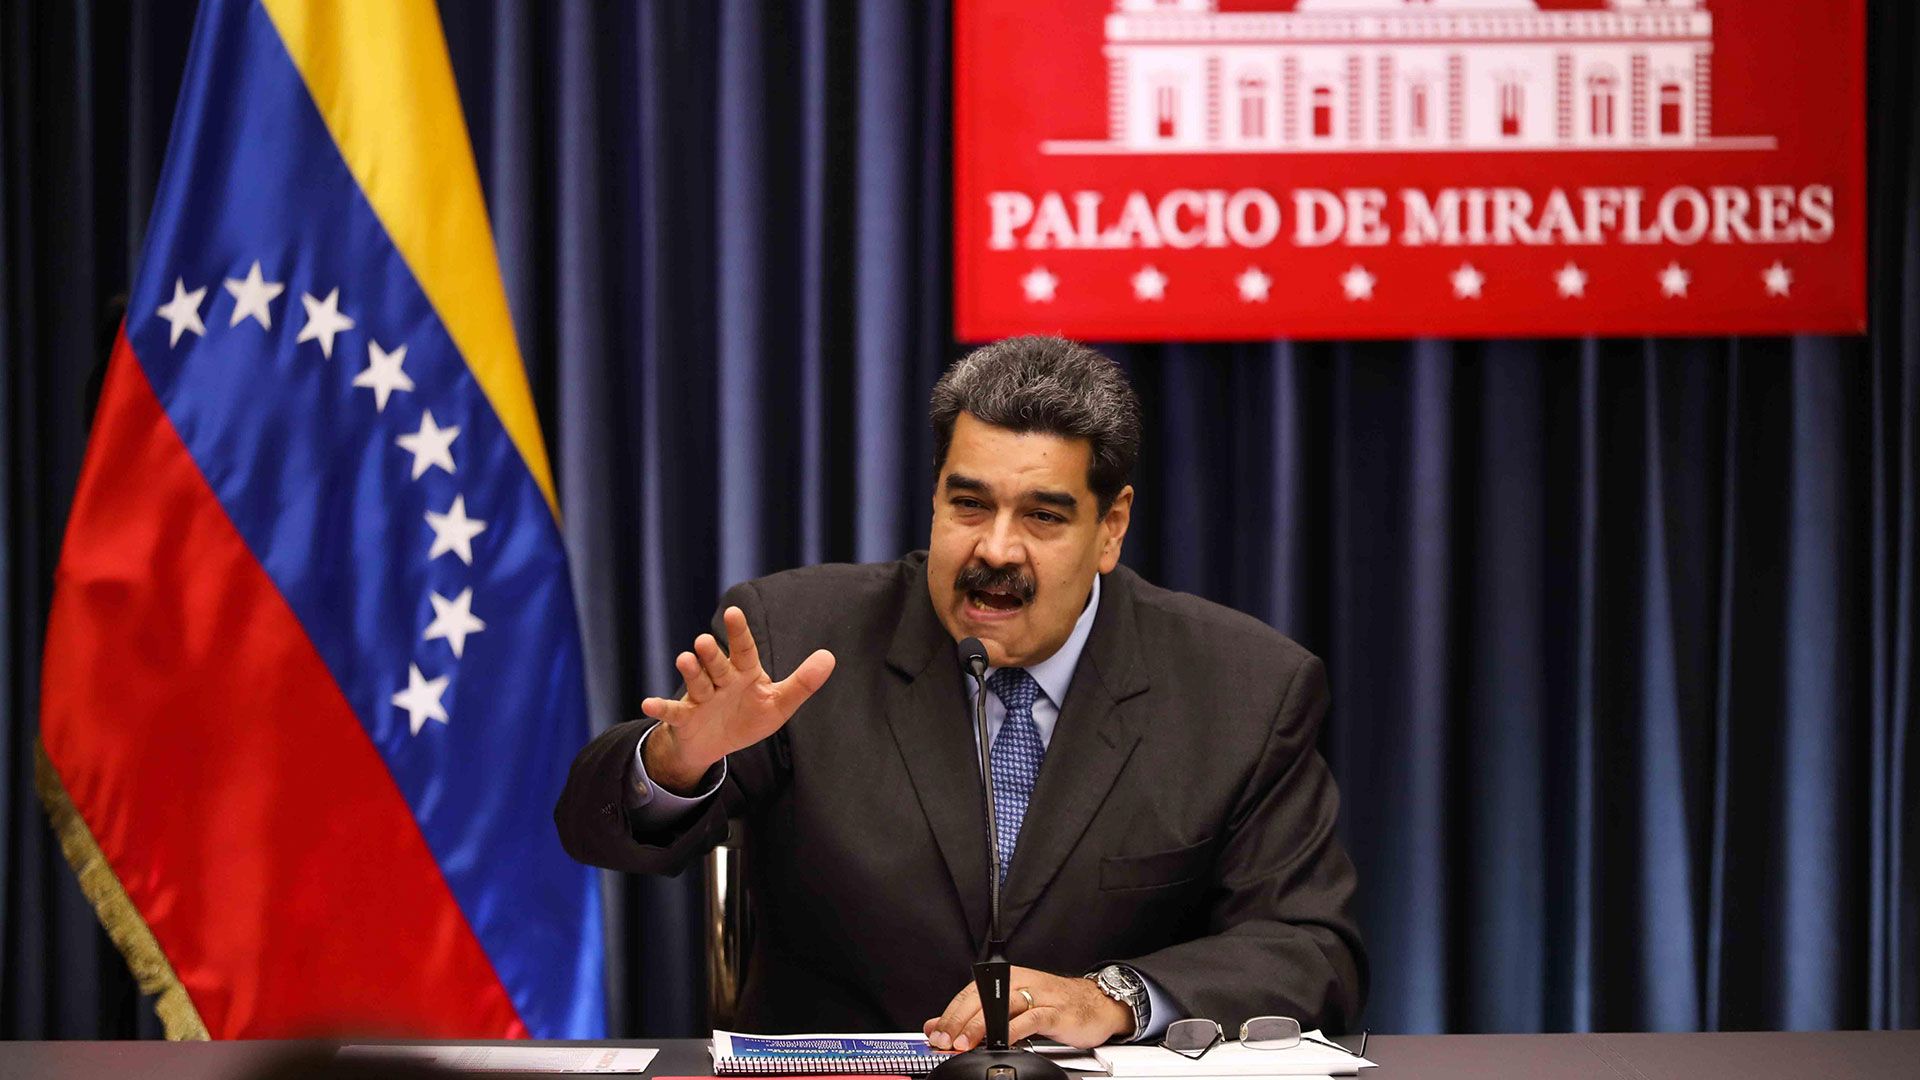 La DAIA repudió al régimen de Nicolás Maduro por calificar de “falso positivo” el atentado a la AMIA